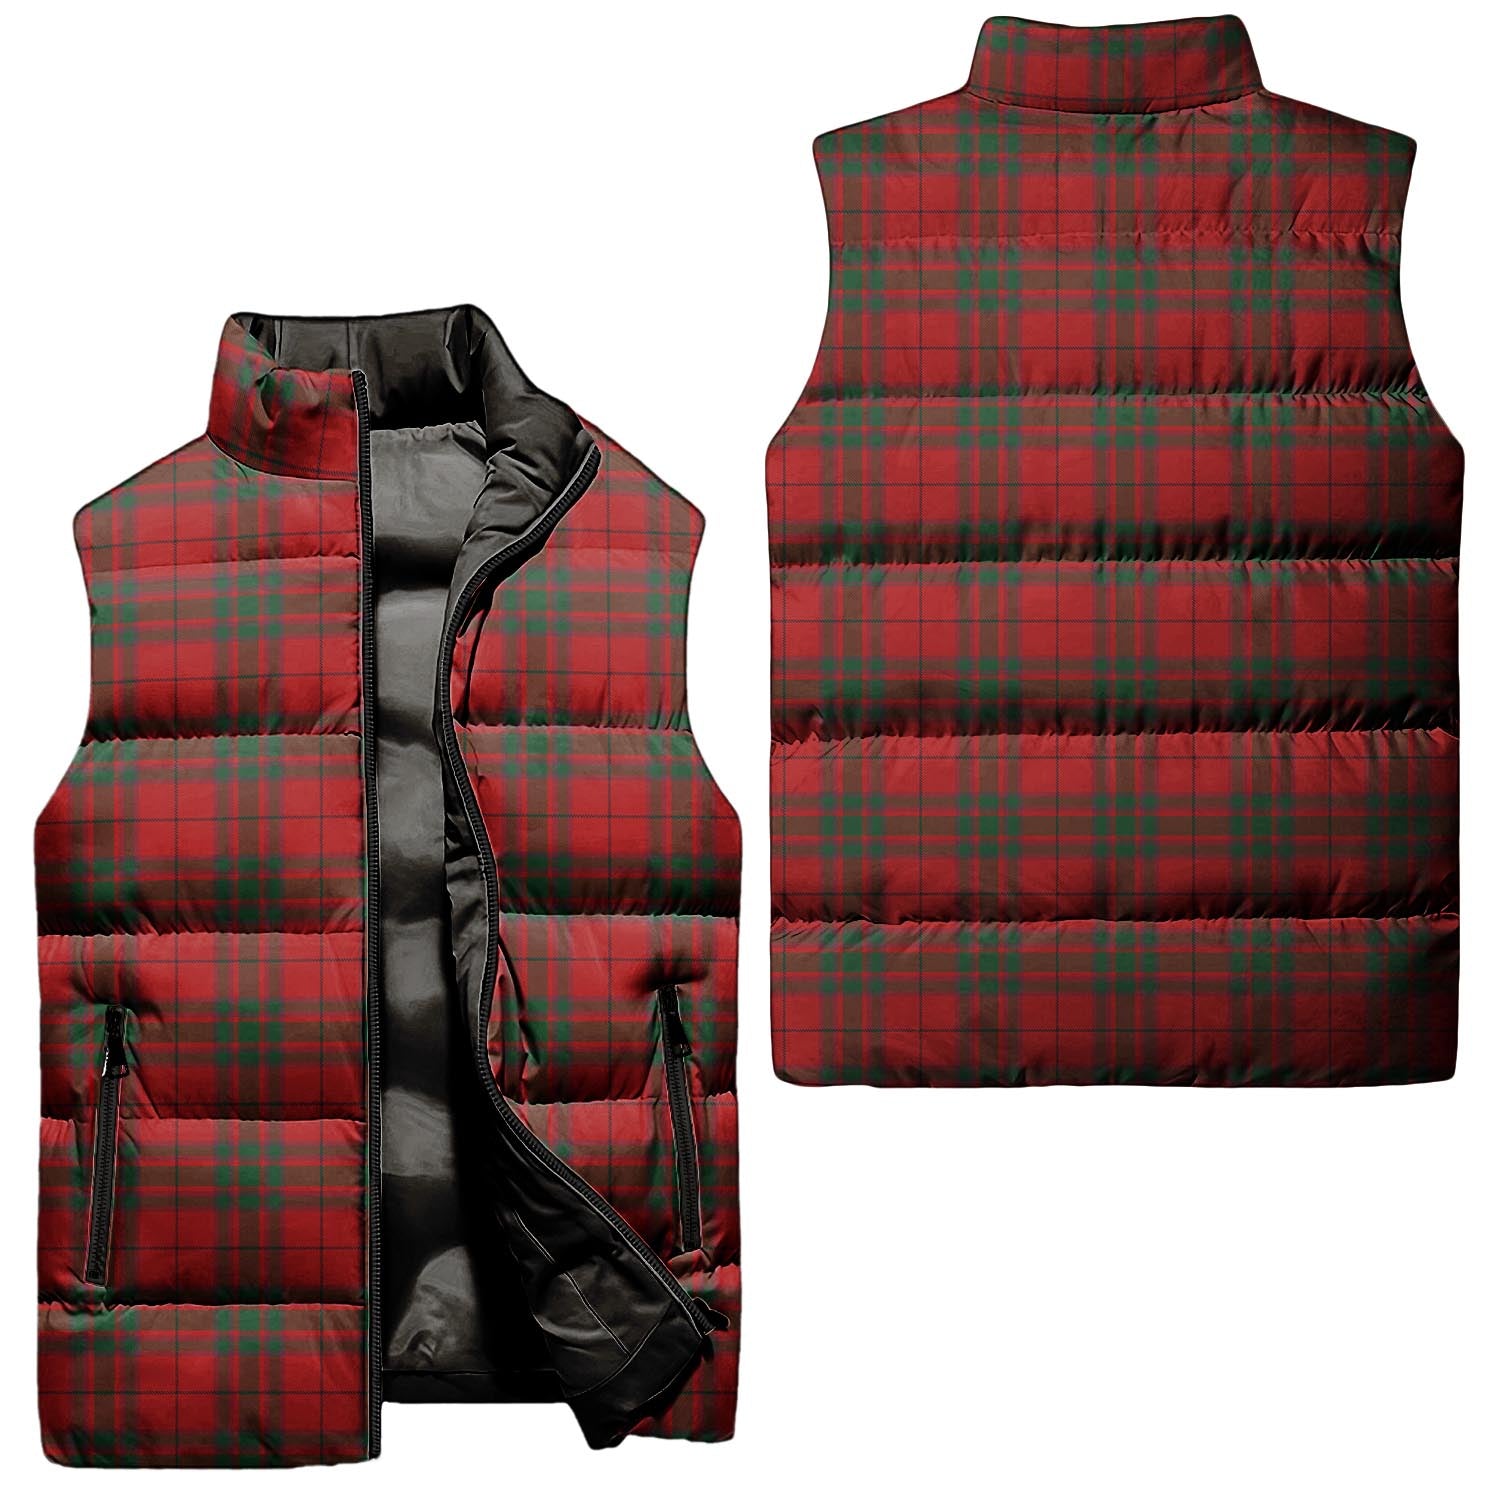 macnab-tartan-puffer-vest-tartan-plaid-sleeveless-down-jacket